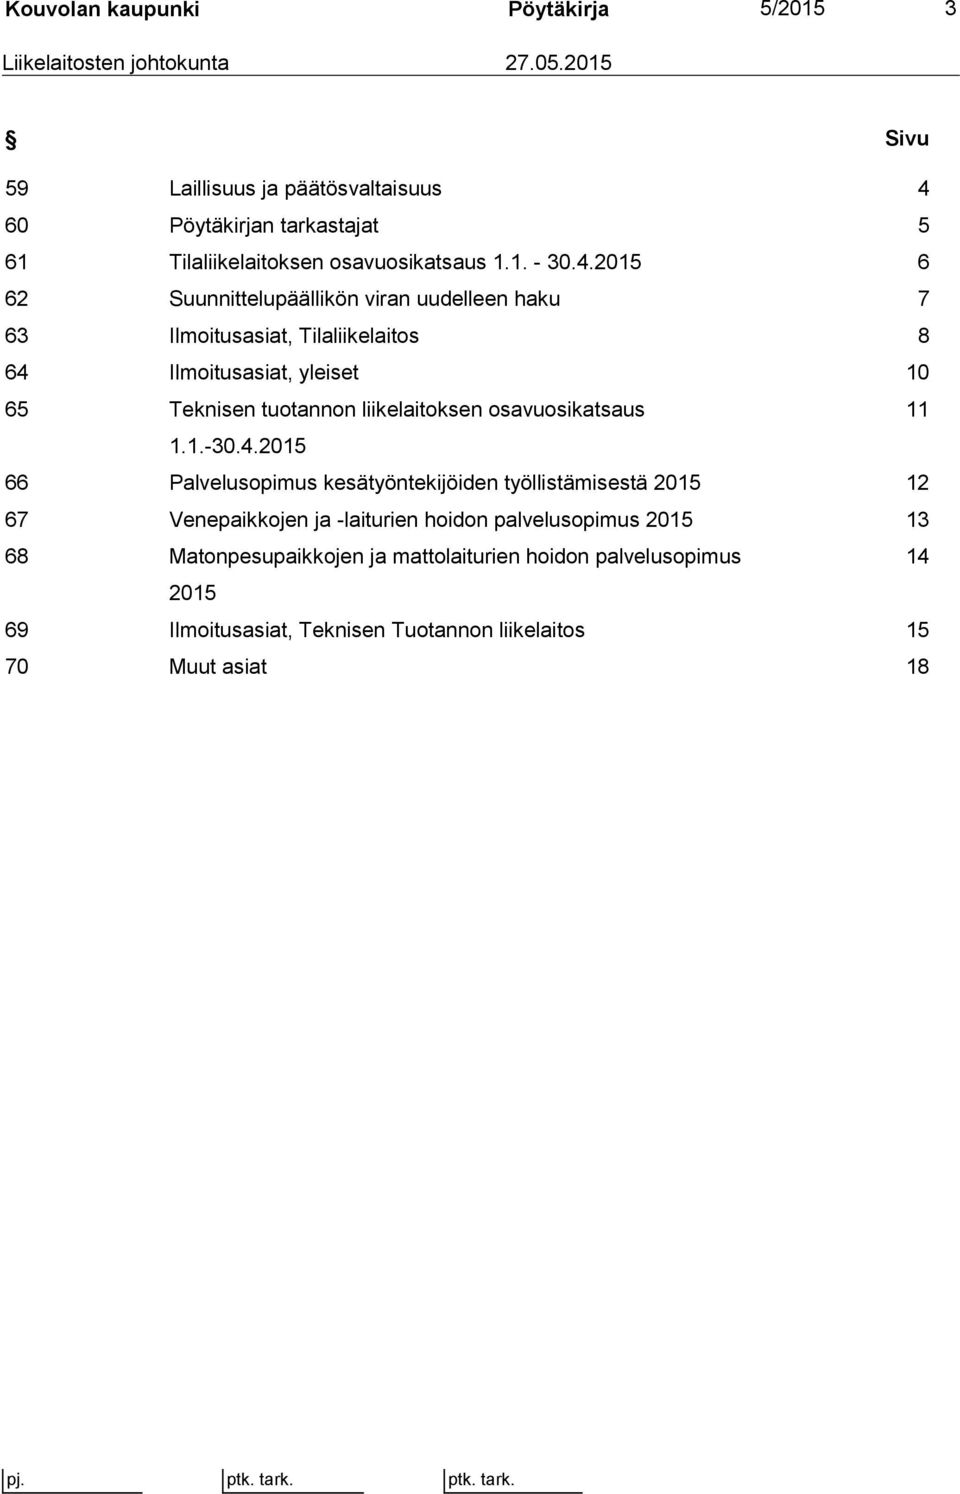 60 Pöytäkirjan tarkastajat 5 61 Tilaliikelaitoksen osavuosikatsaus 1.1. - 30.4.